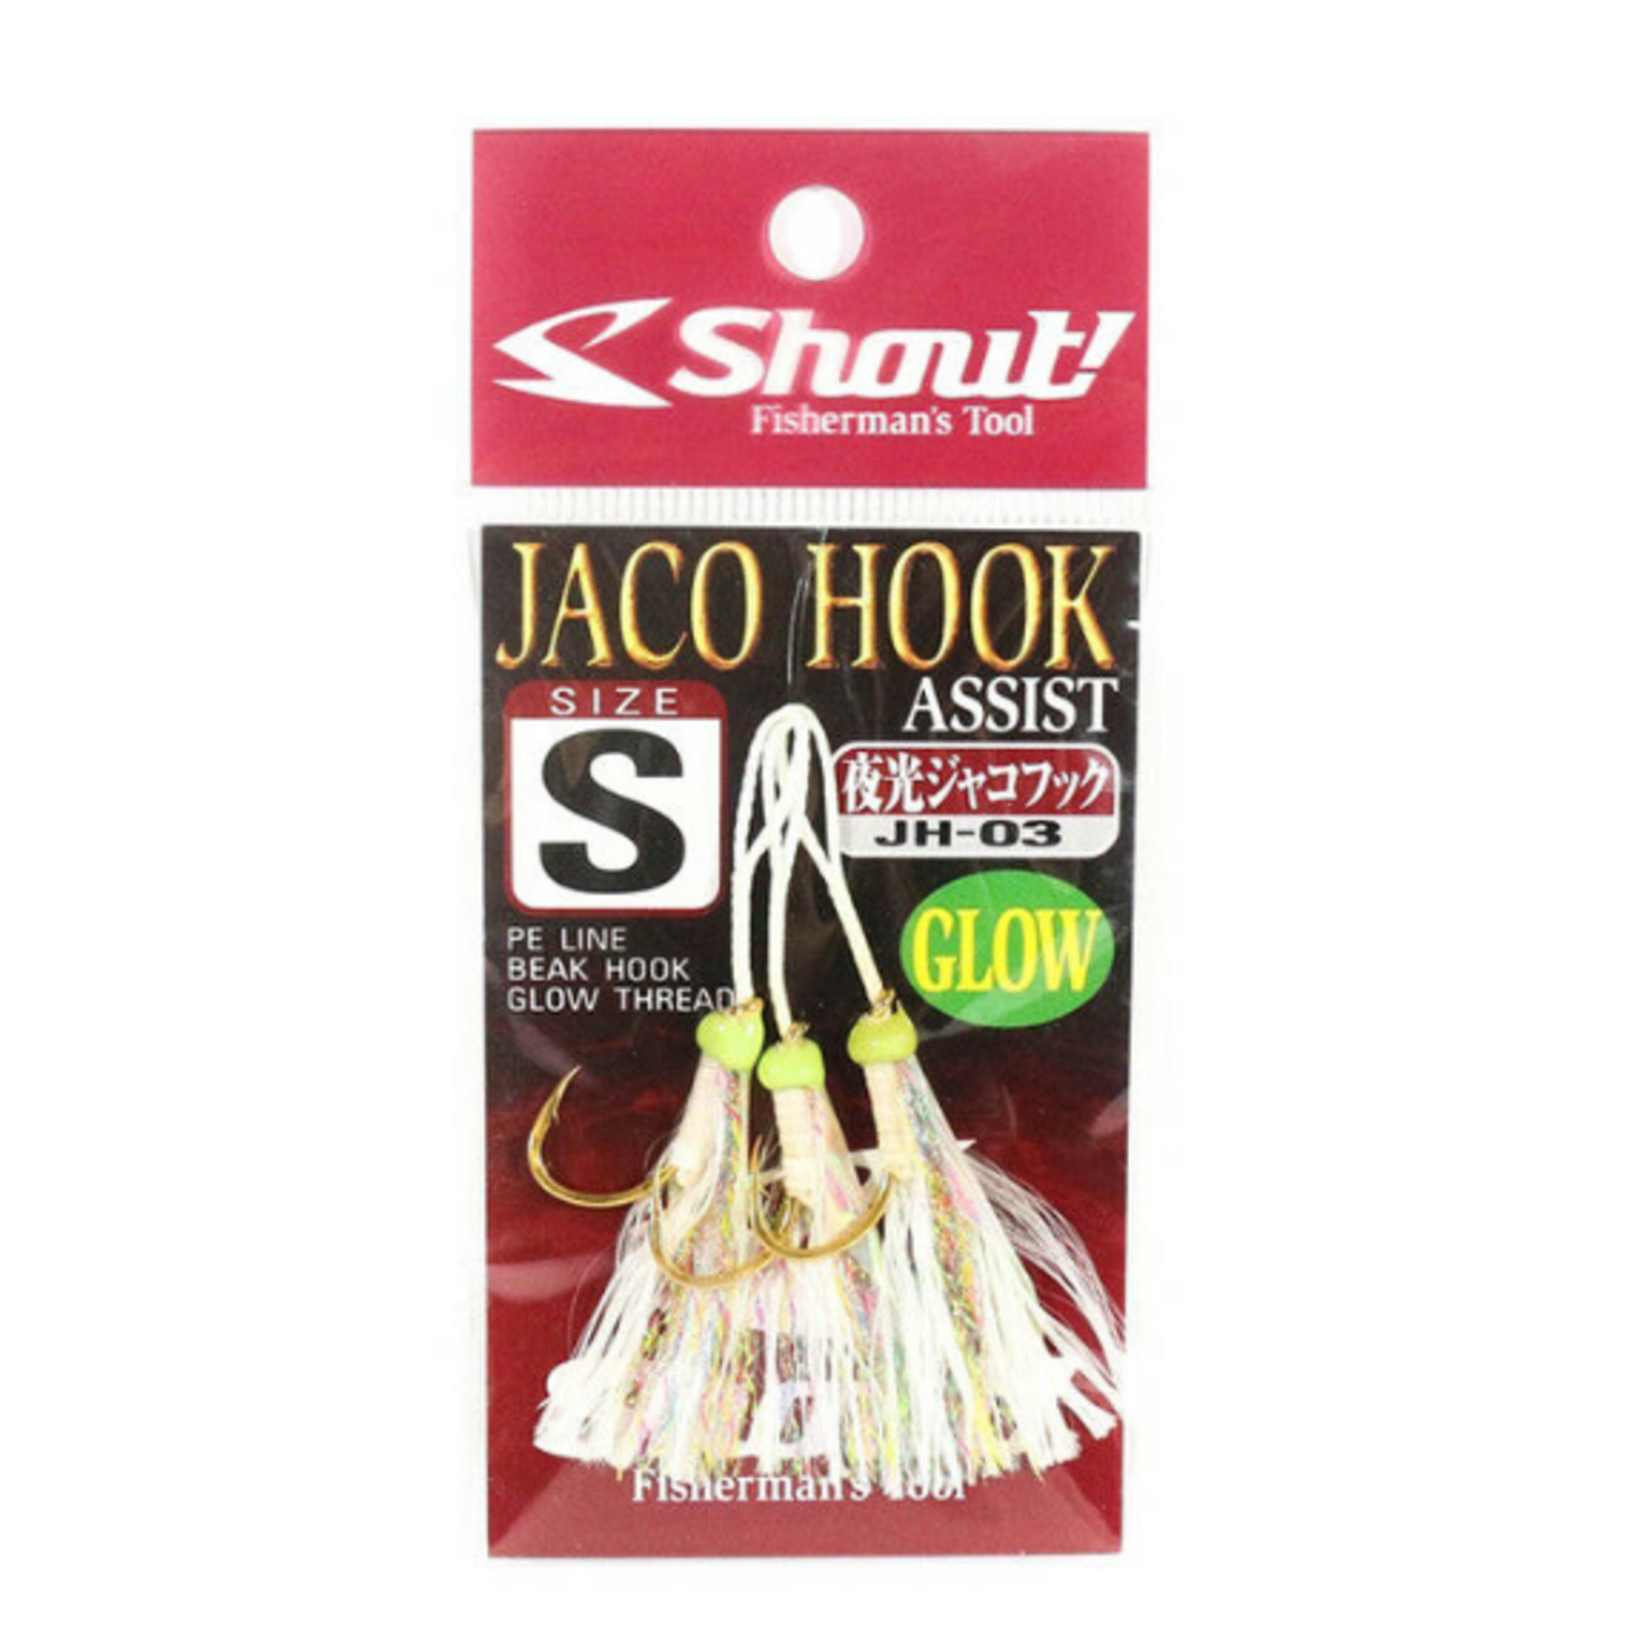 Shout Jaco Glow Assist Hook